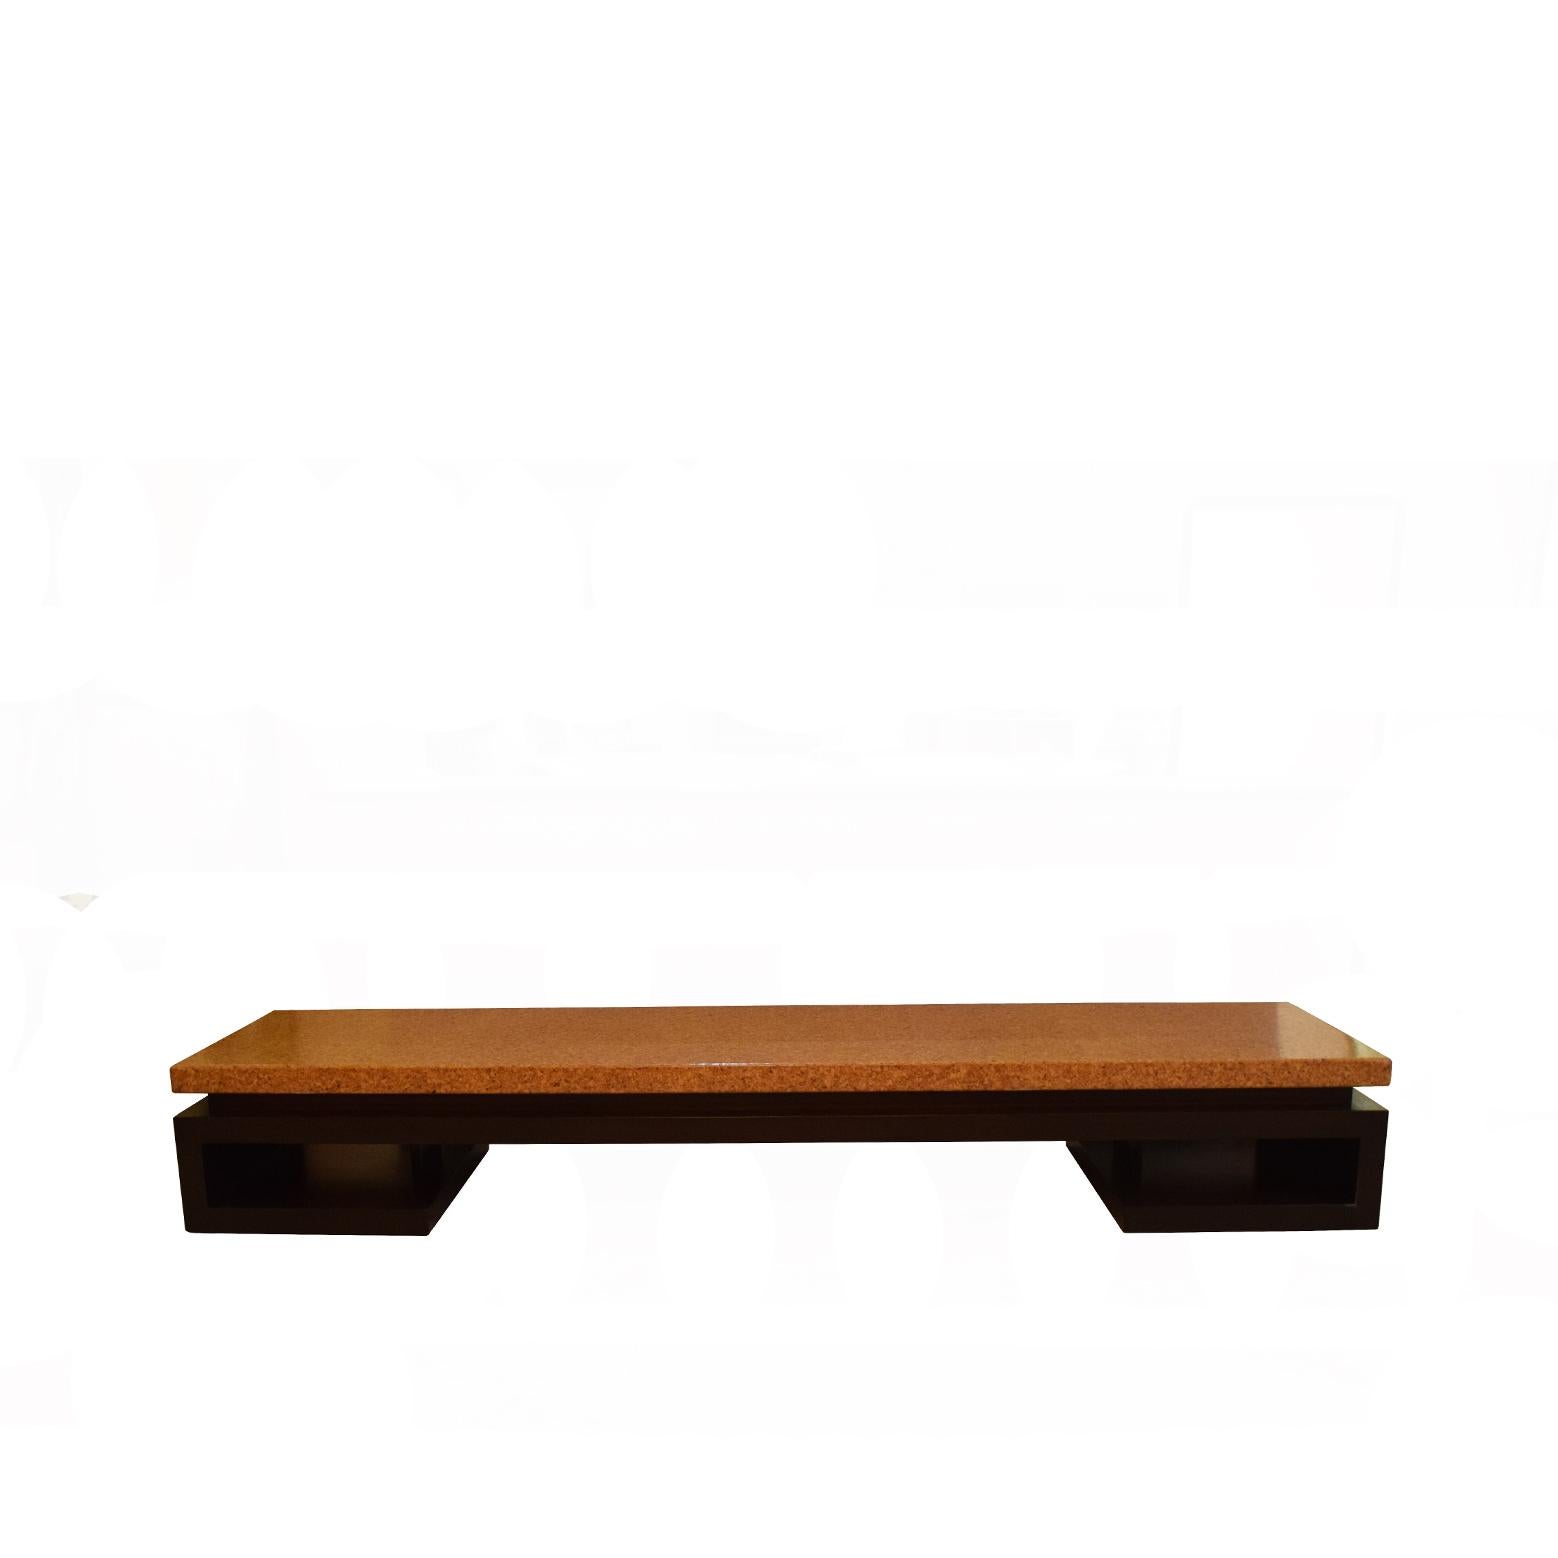 Table / banc bas en liège Paul Frankl des années 1940 fabriqué par Johnson Furniture Co. entièrement restauré.